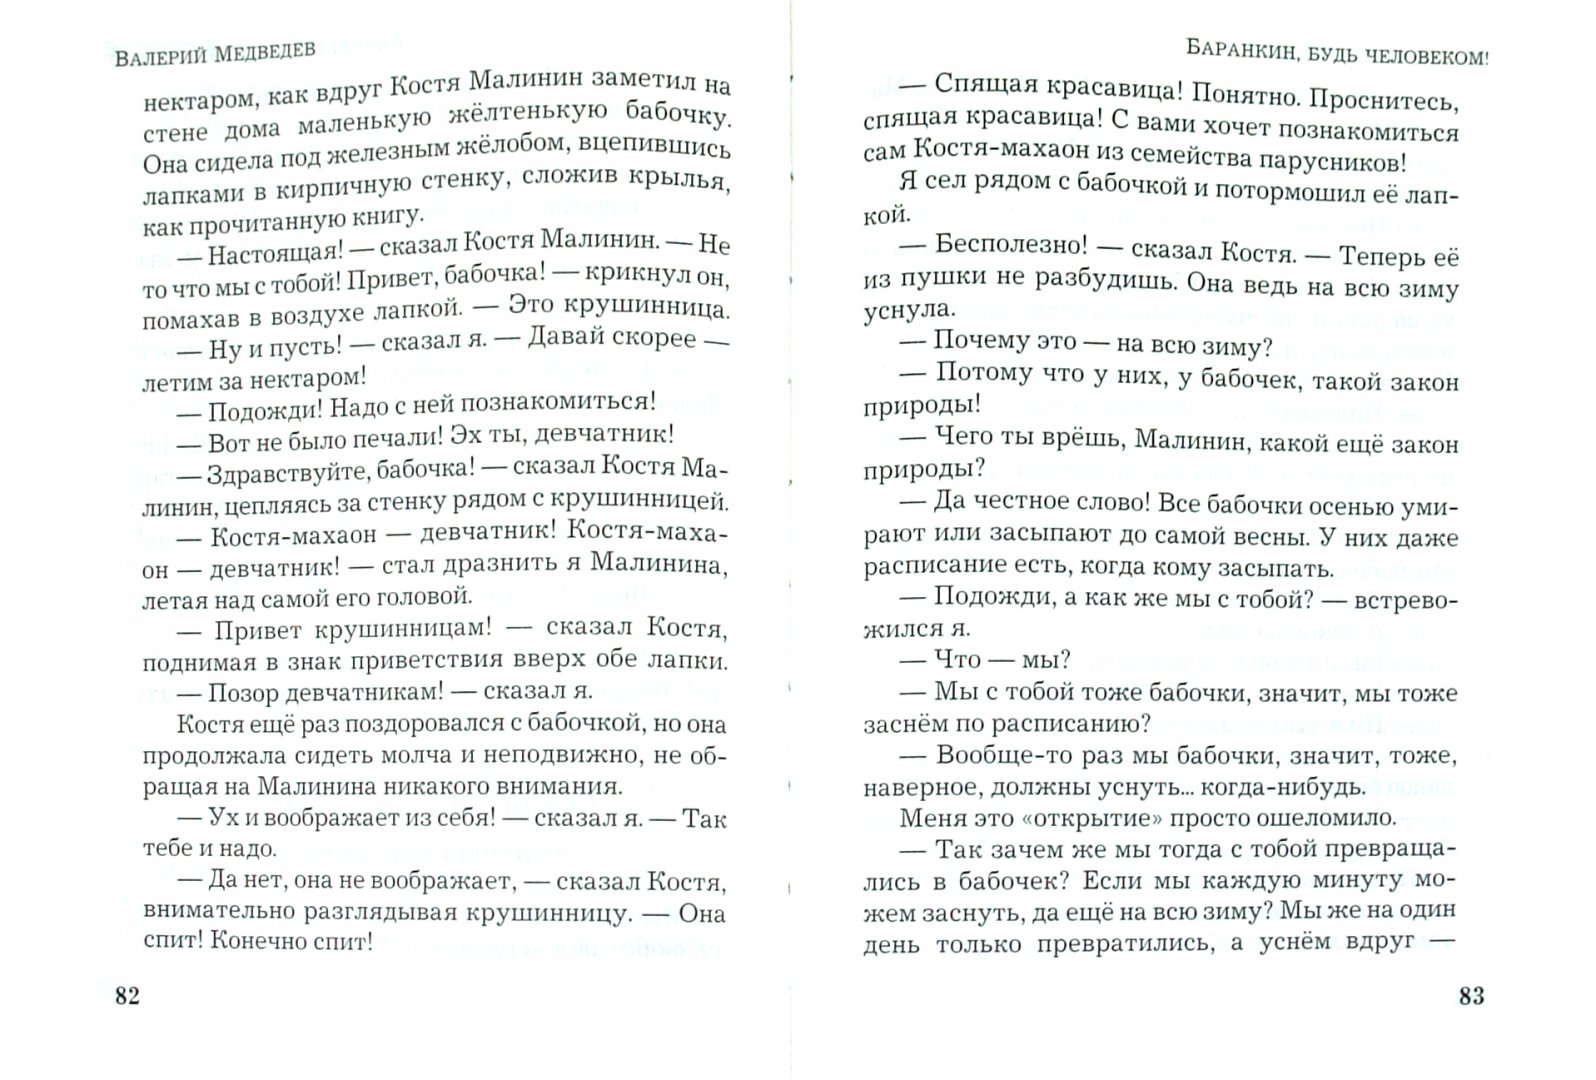 Иллюстрация 1 из 5 для Баранкин, будь человеком! - Валерий Медведев | Лабиринт - книги. Источник: Лабиринт